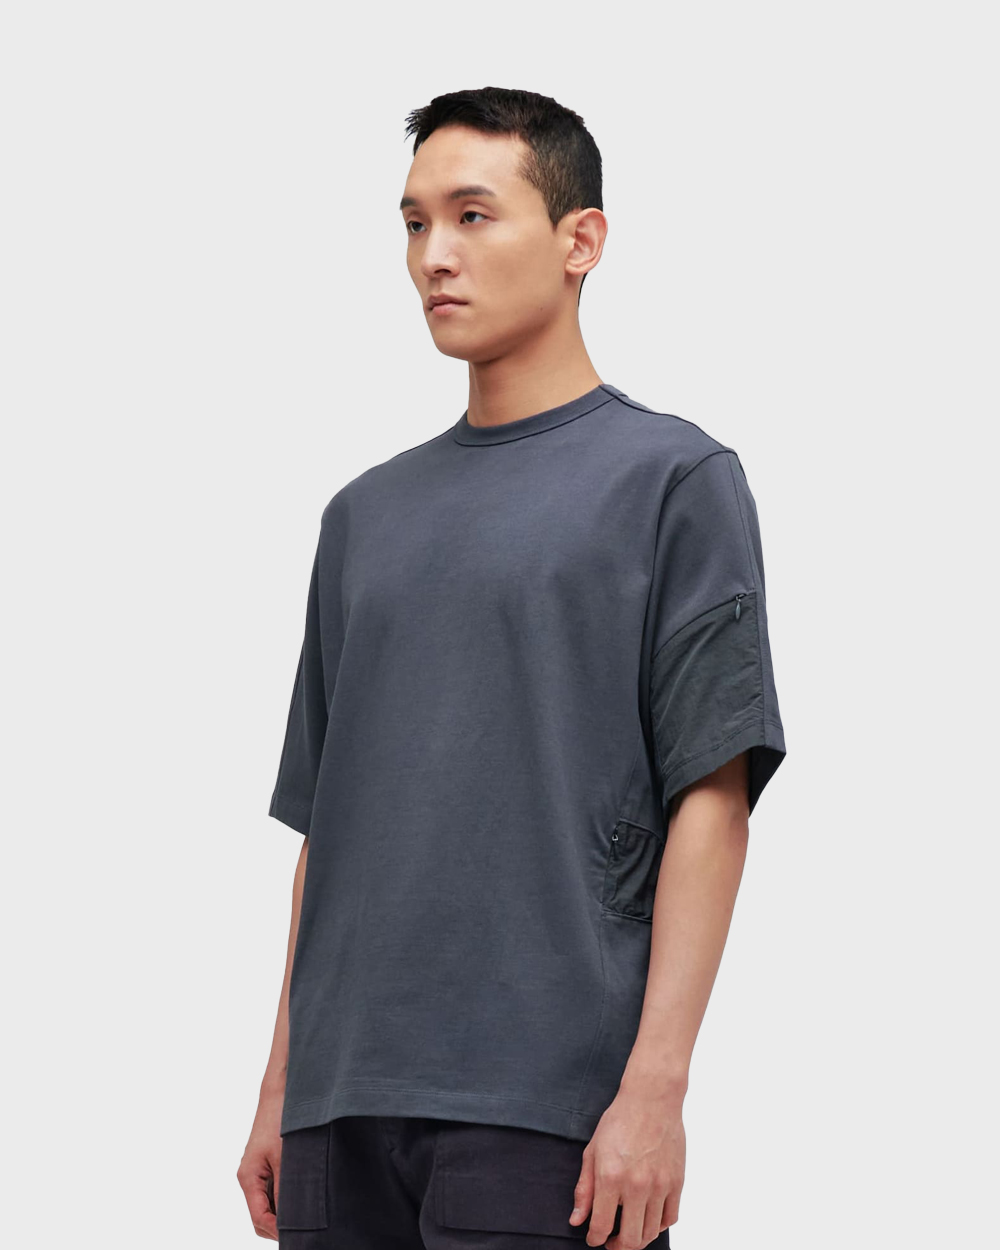 ÉÉ (Étiquette-vidÉ) Pocket t-shirts (Charcoal)